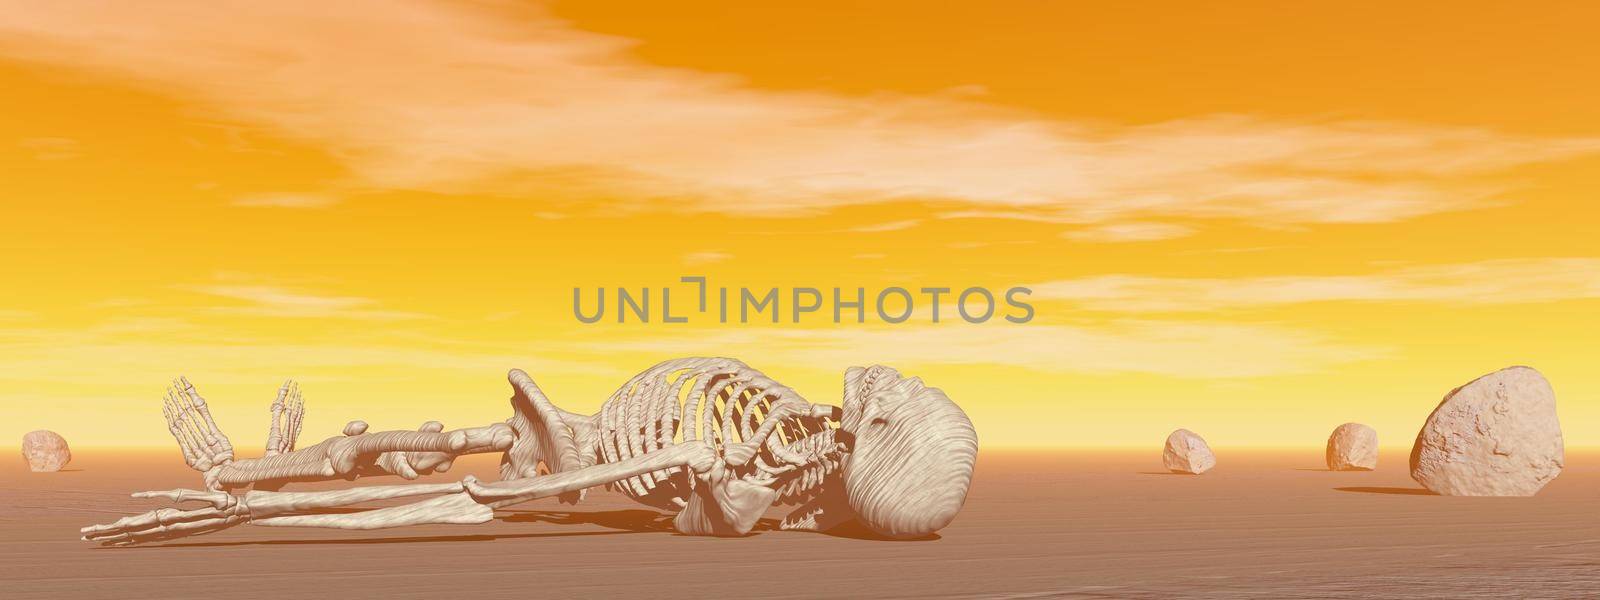 Skeleton in the desert - 3D render by Elenaphotos21